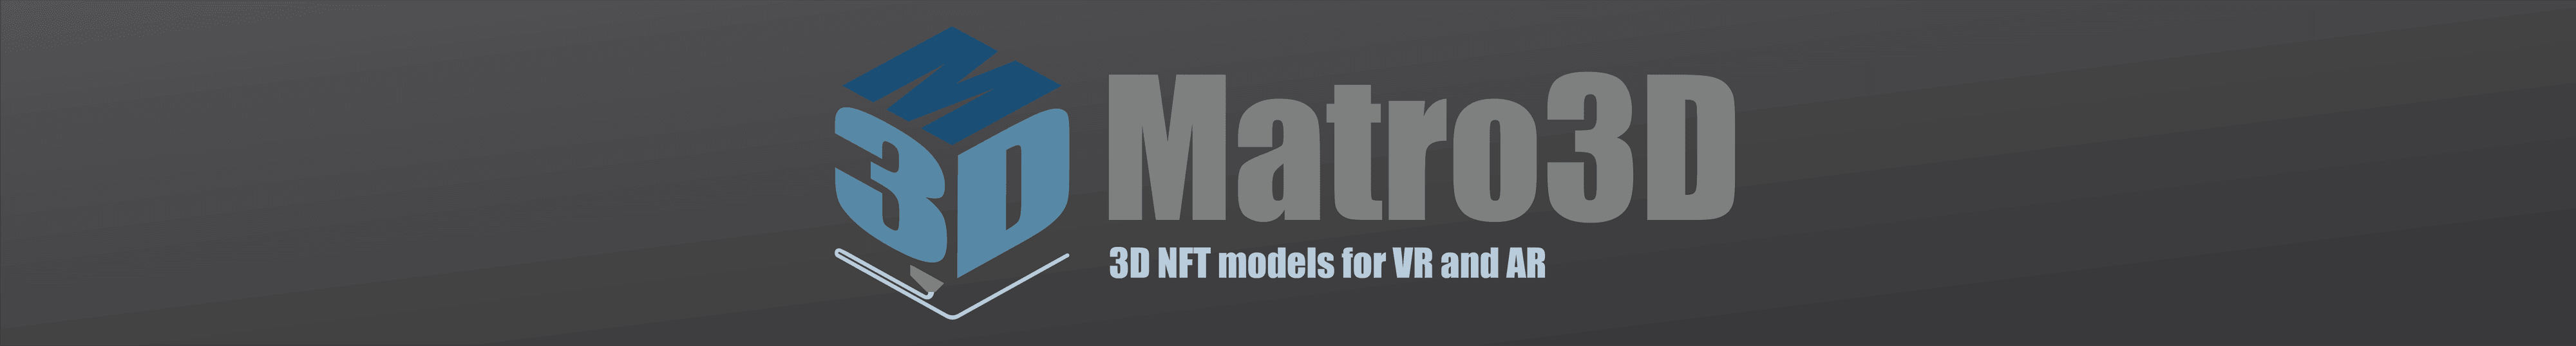 Matro3D バナー